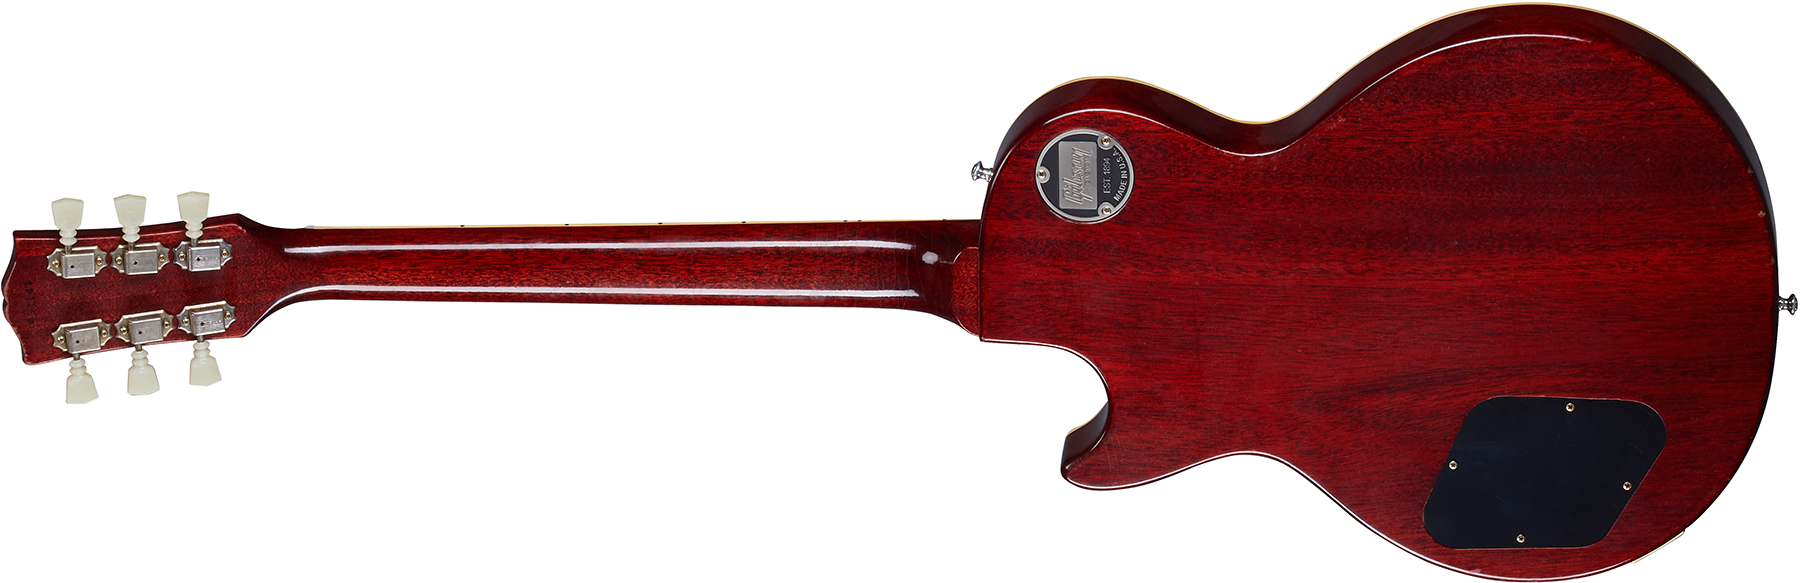 Gibson Custom Shop Murphy Lab Les Paul Standard 1960 Reissue - Light Aged Tomato Soup Burst - Guitarra eléctrica de corte único. - Variation 1